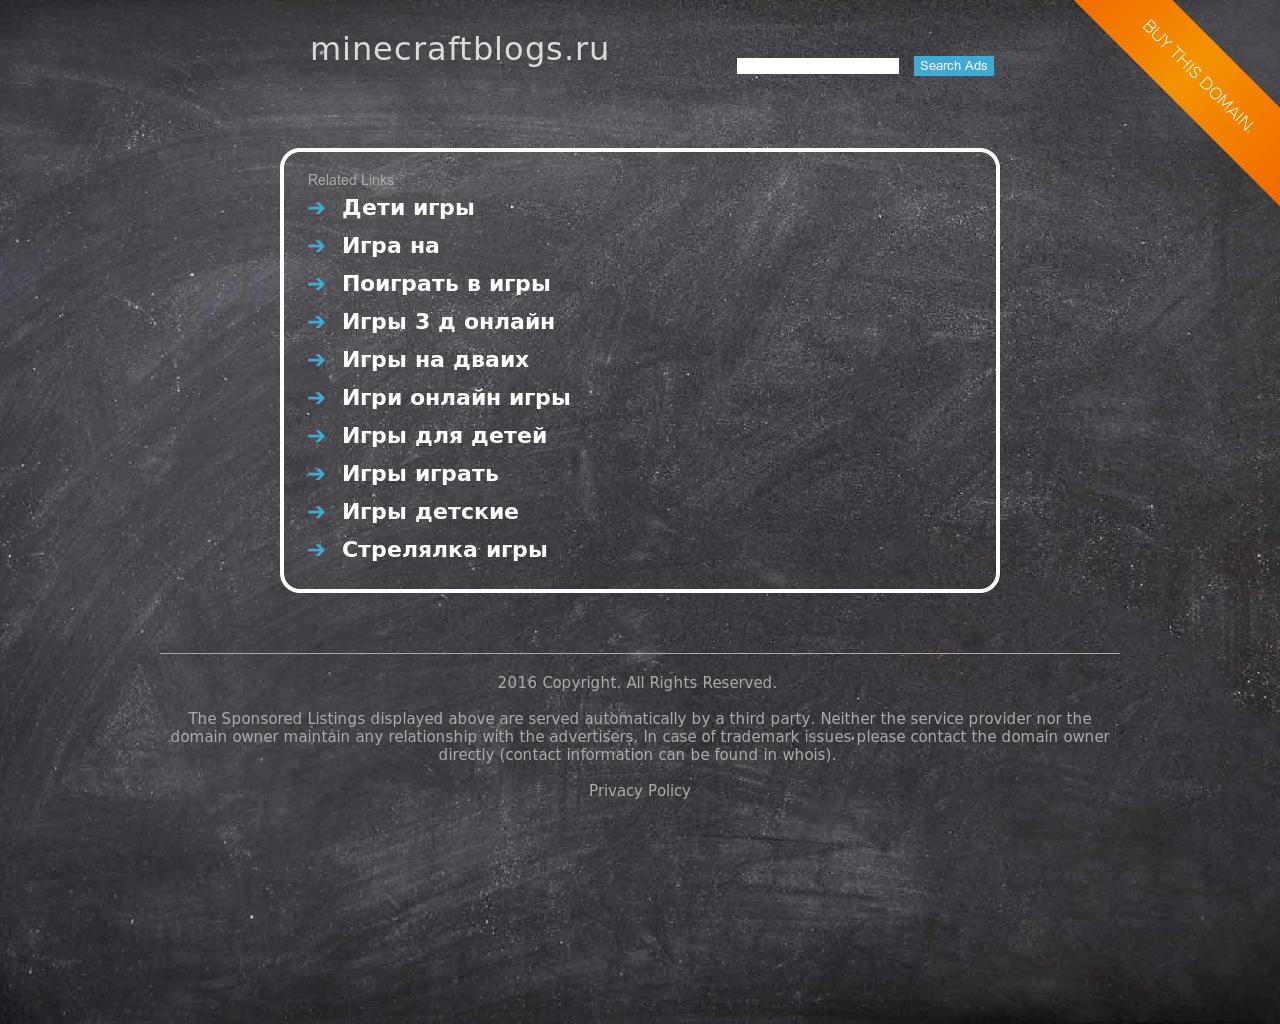 Изображение сайта minecraftblogs.ru в разрешении 1280x1024